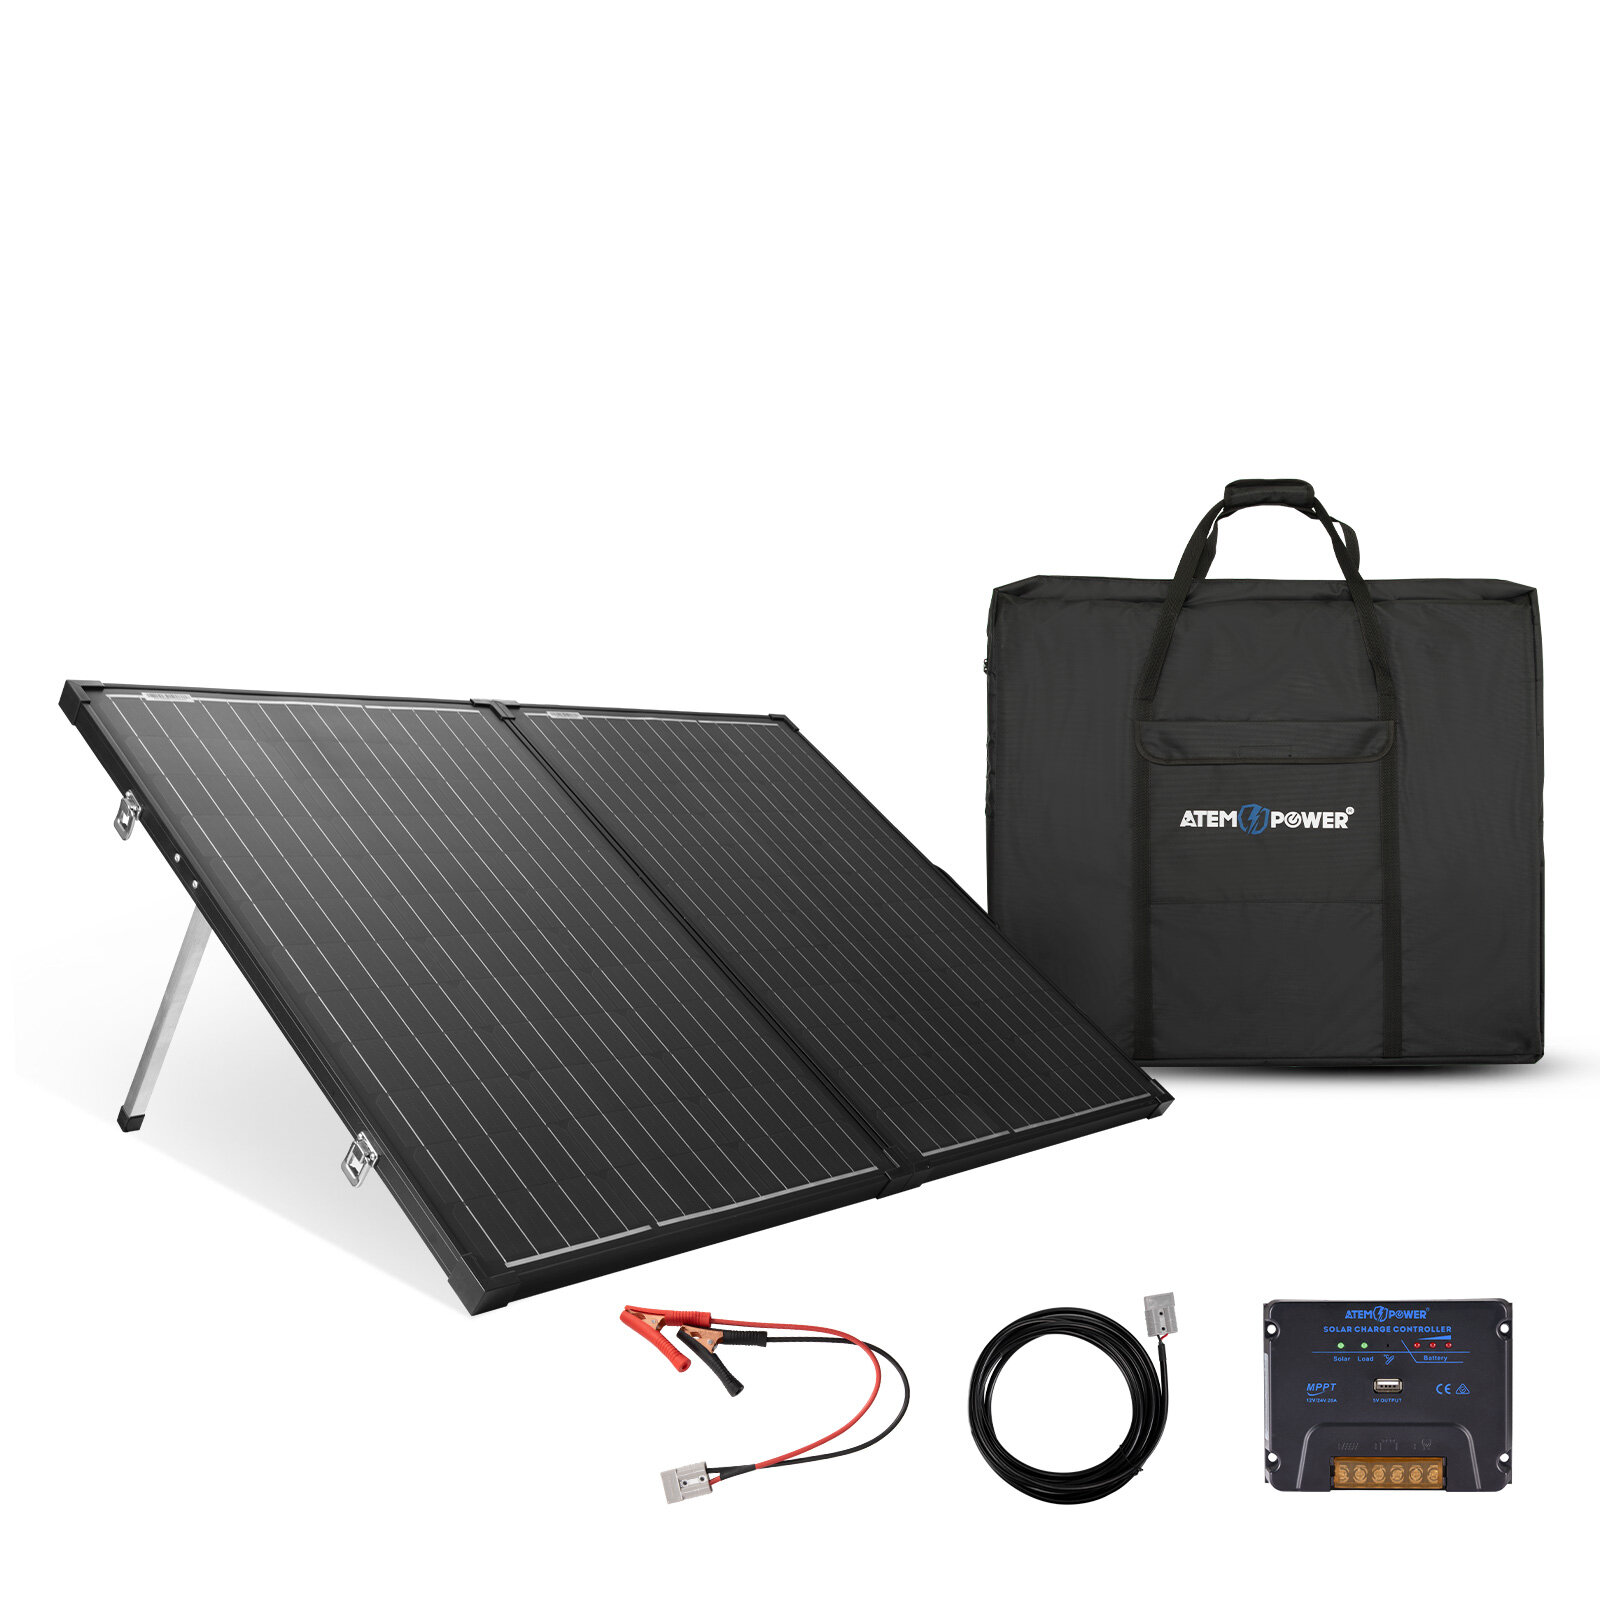 Monokryštalický solárny panel ATEM POWER AP-FOLD-FLES 200W bez skla, prenosný solárny kufr vybavený kontrolérom MPPT 20A pre 12V batérie, pre kempovanie v RV.